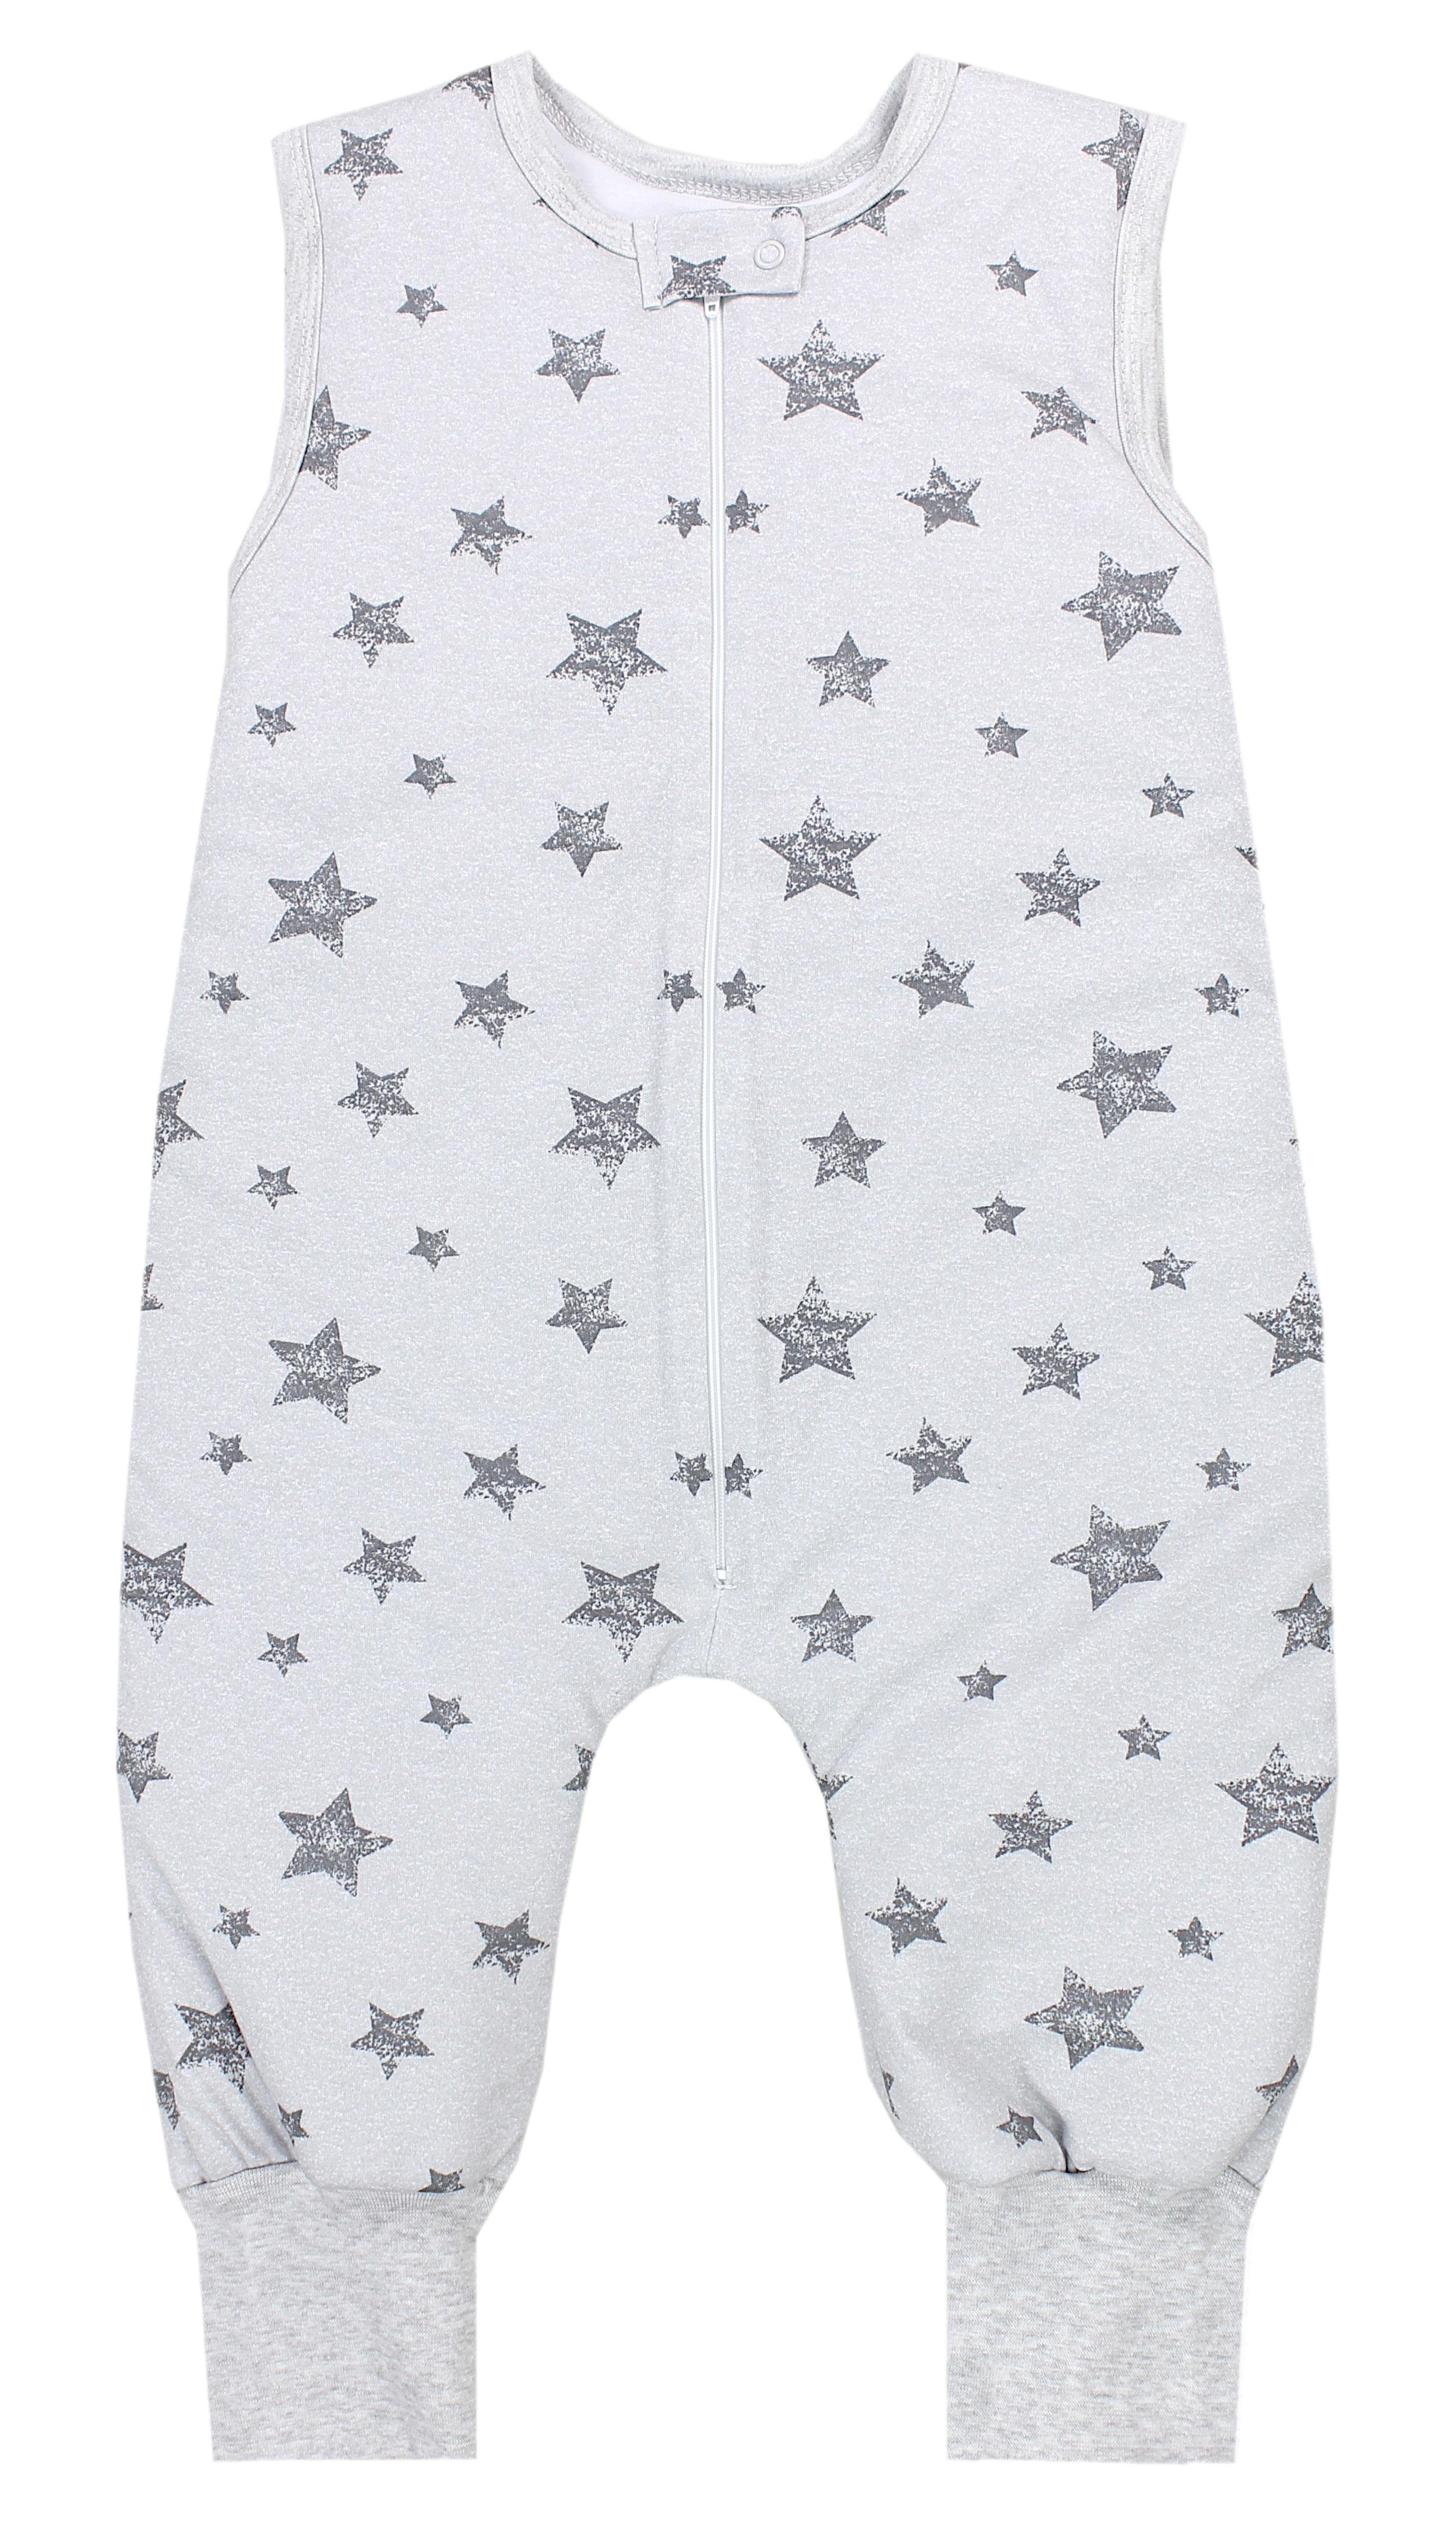 TupTam Babyschlafsack Winter Schlafsack mit Beinen OEKO-TEX zertifiziert 2,5 TOG Unisex Sterne Grau